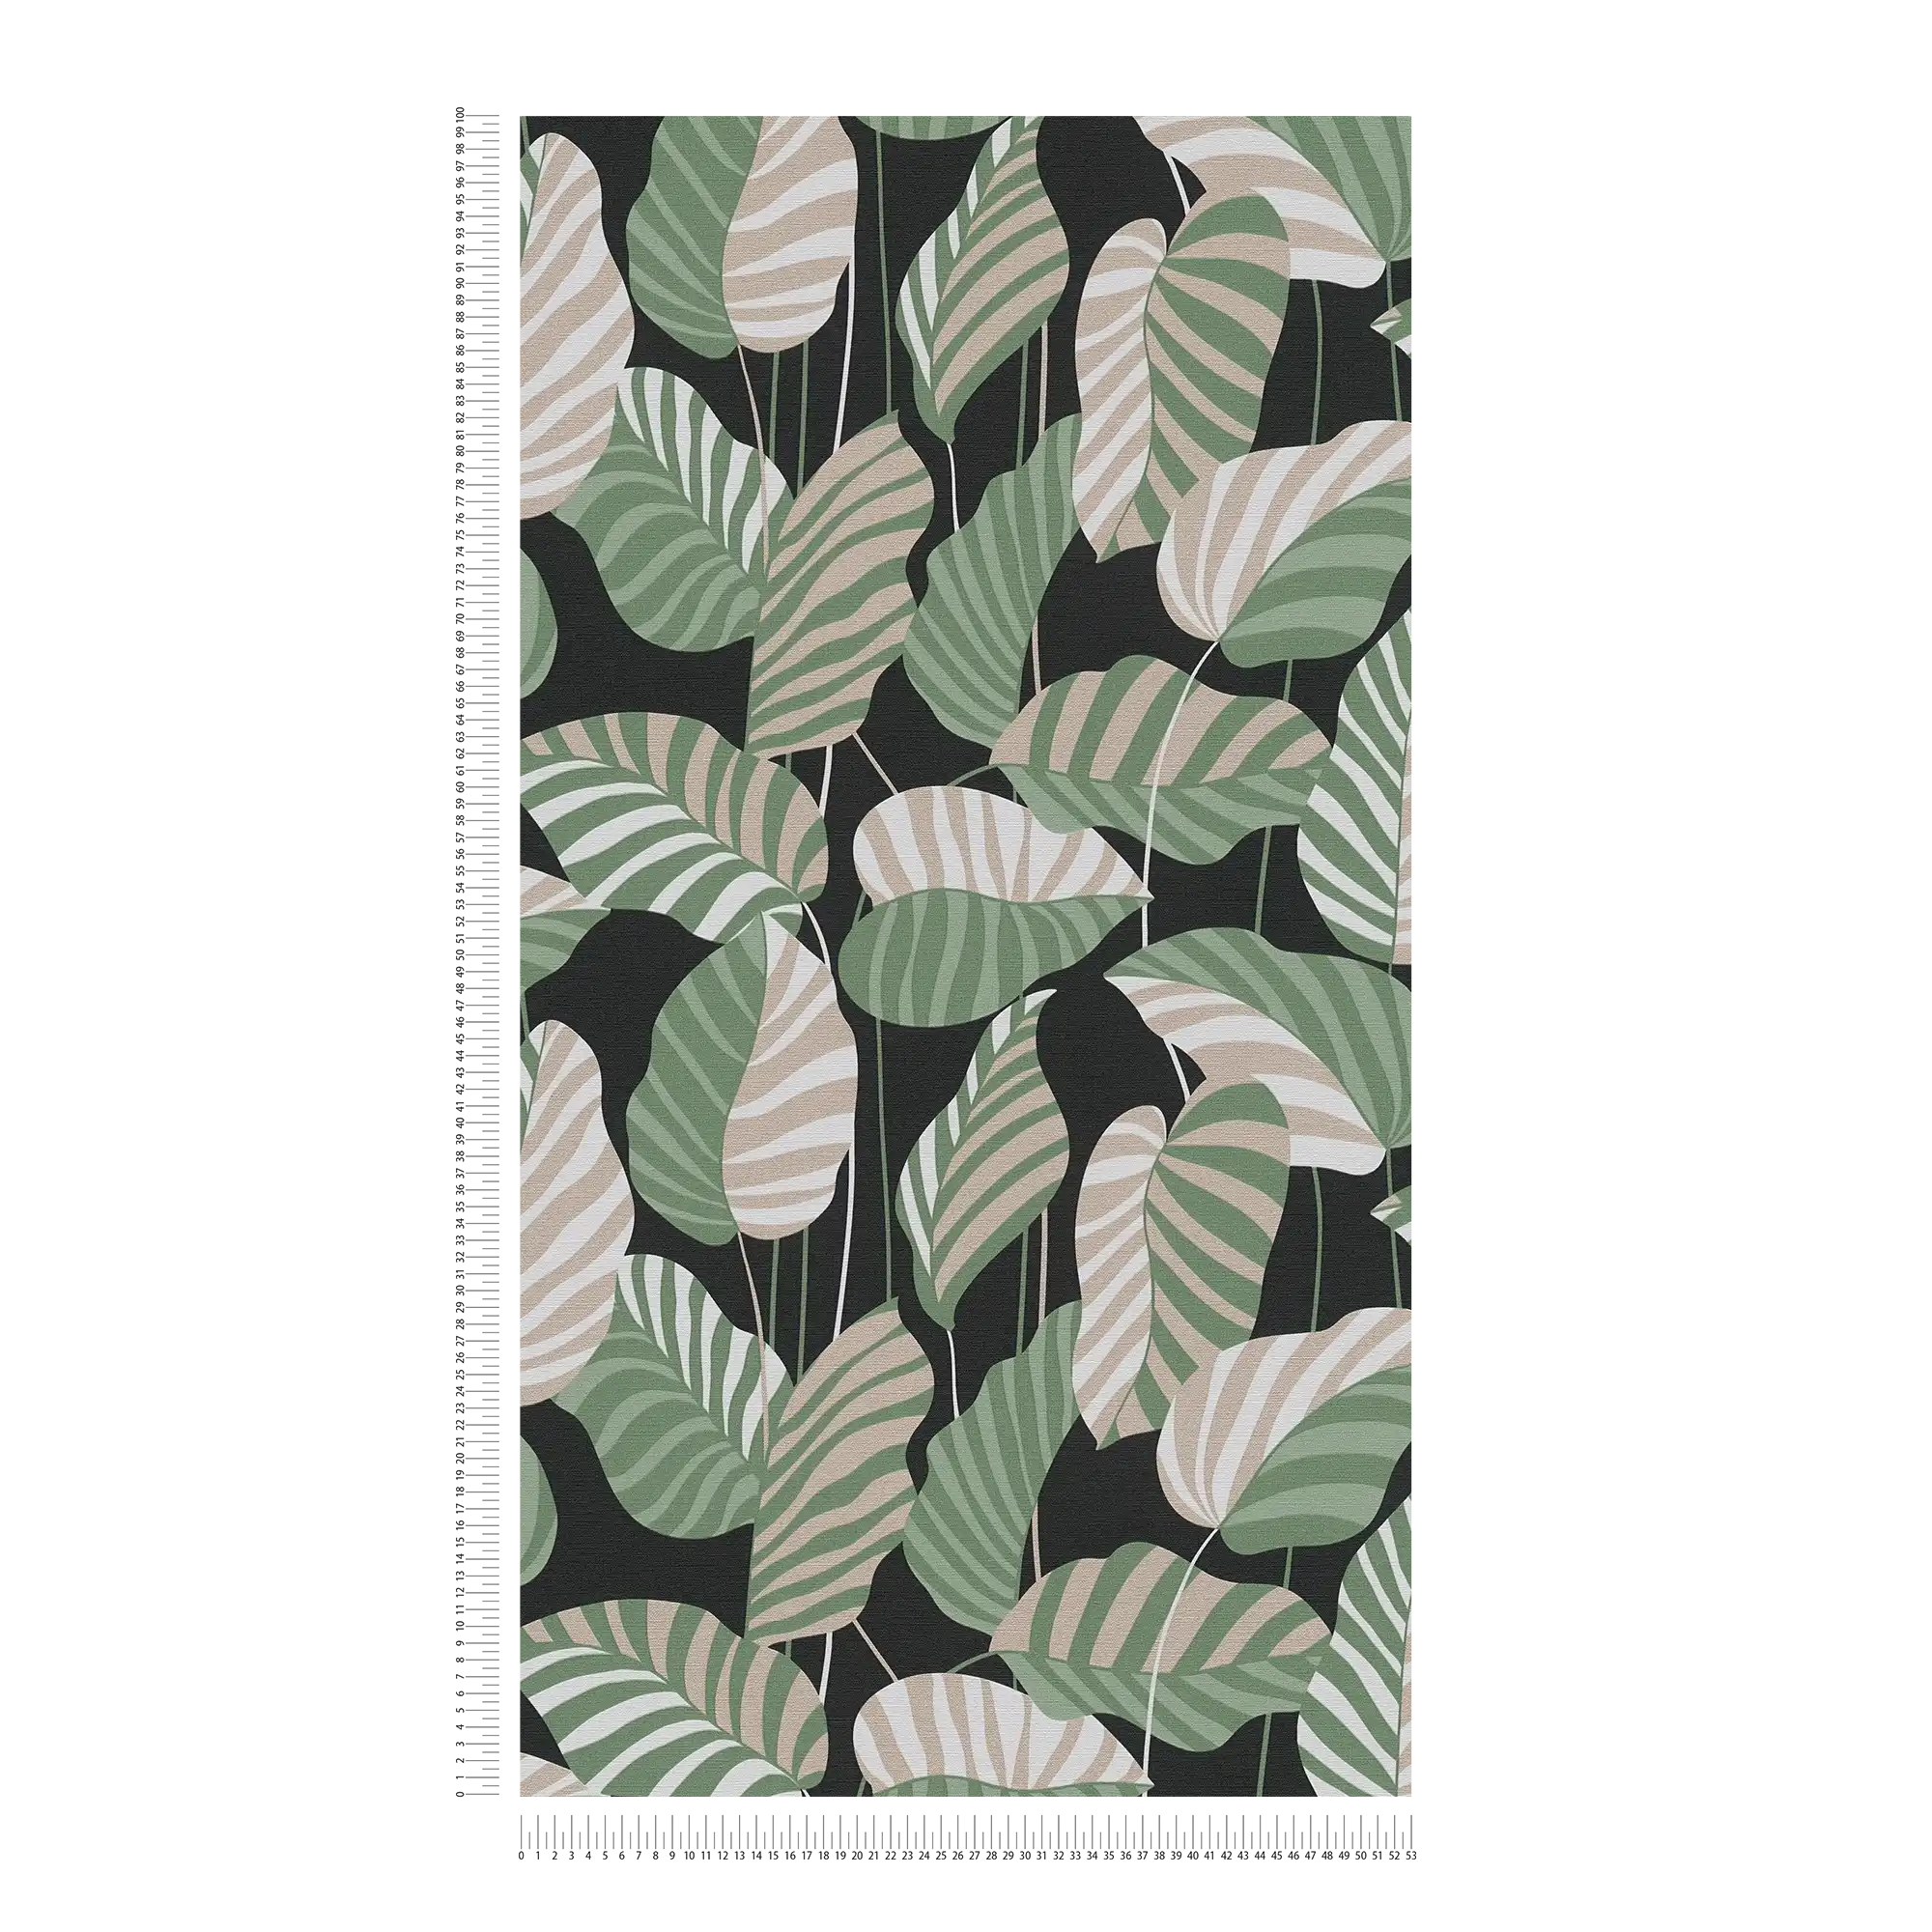             Carta da parati in tessuto non tessuto con foglie di palma in leggera lucentezza - nero, verde, oro
        